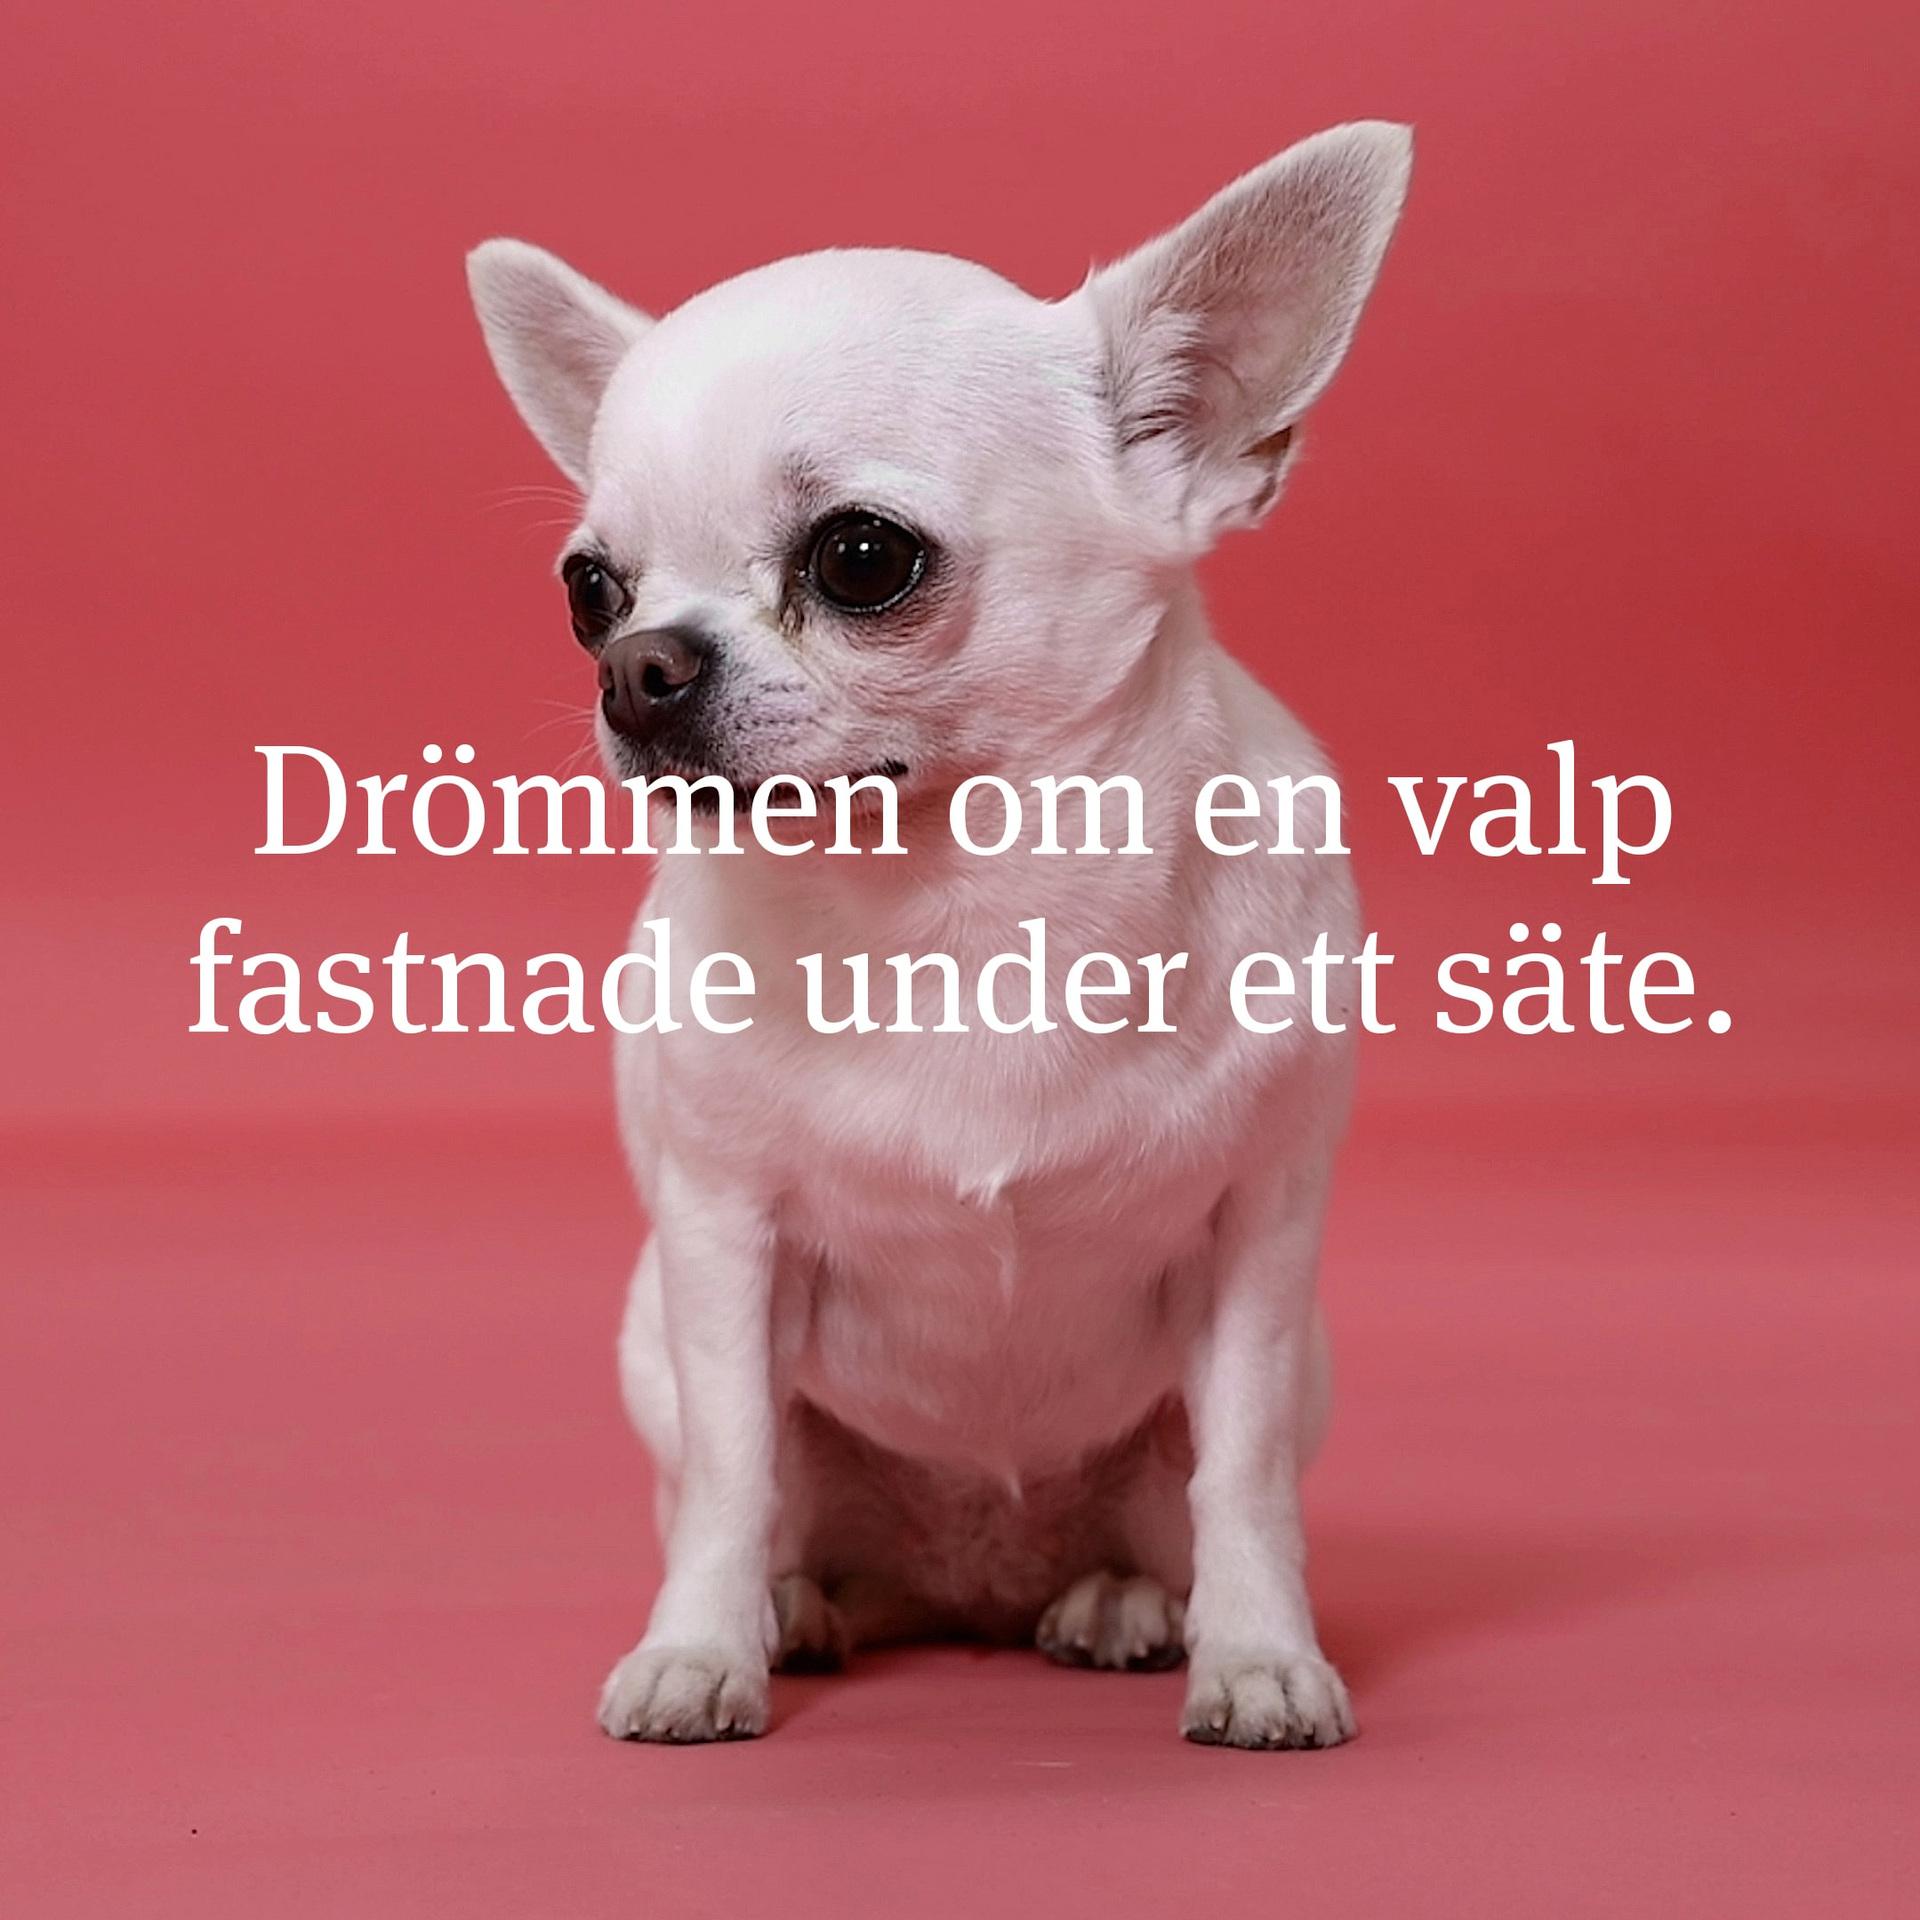 Smuggelhundarna - Jordbruksverkets kampanj mot hundsmuggling.